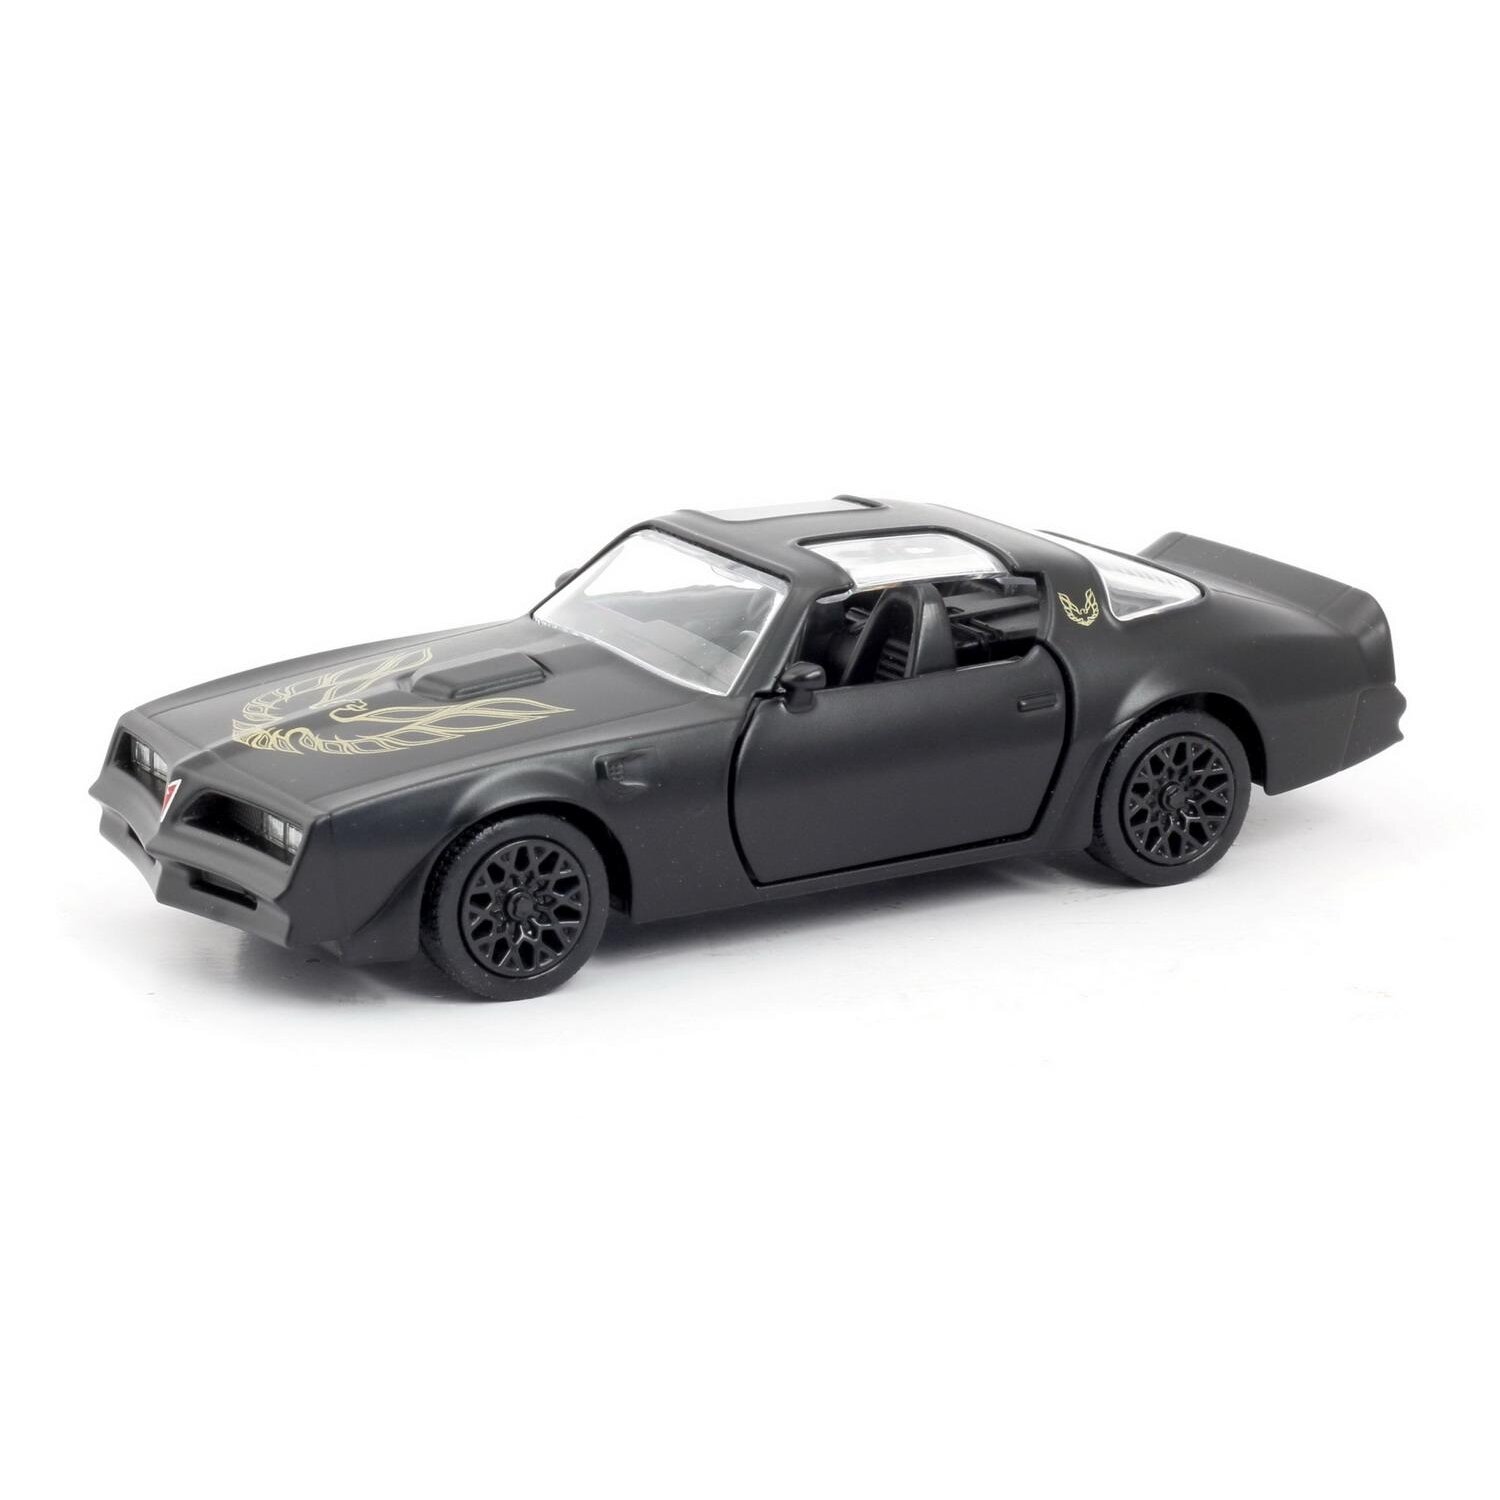 Машина металлическая RMZ City 1:32 Pontiac Firebird 1978, инерционная, черный матовый цвет - Uni Fortune [554056M]